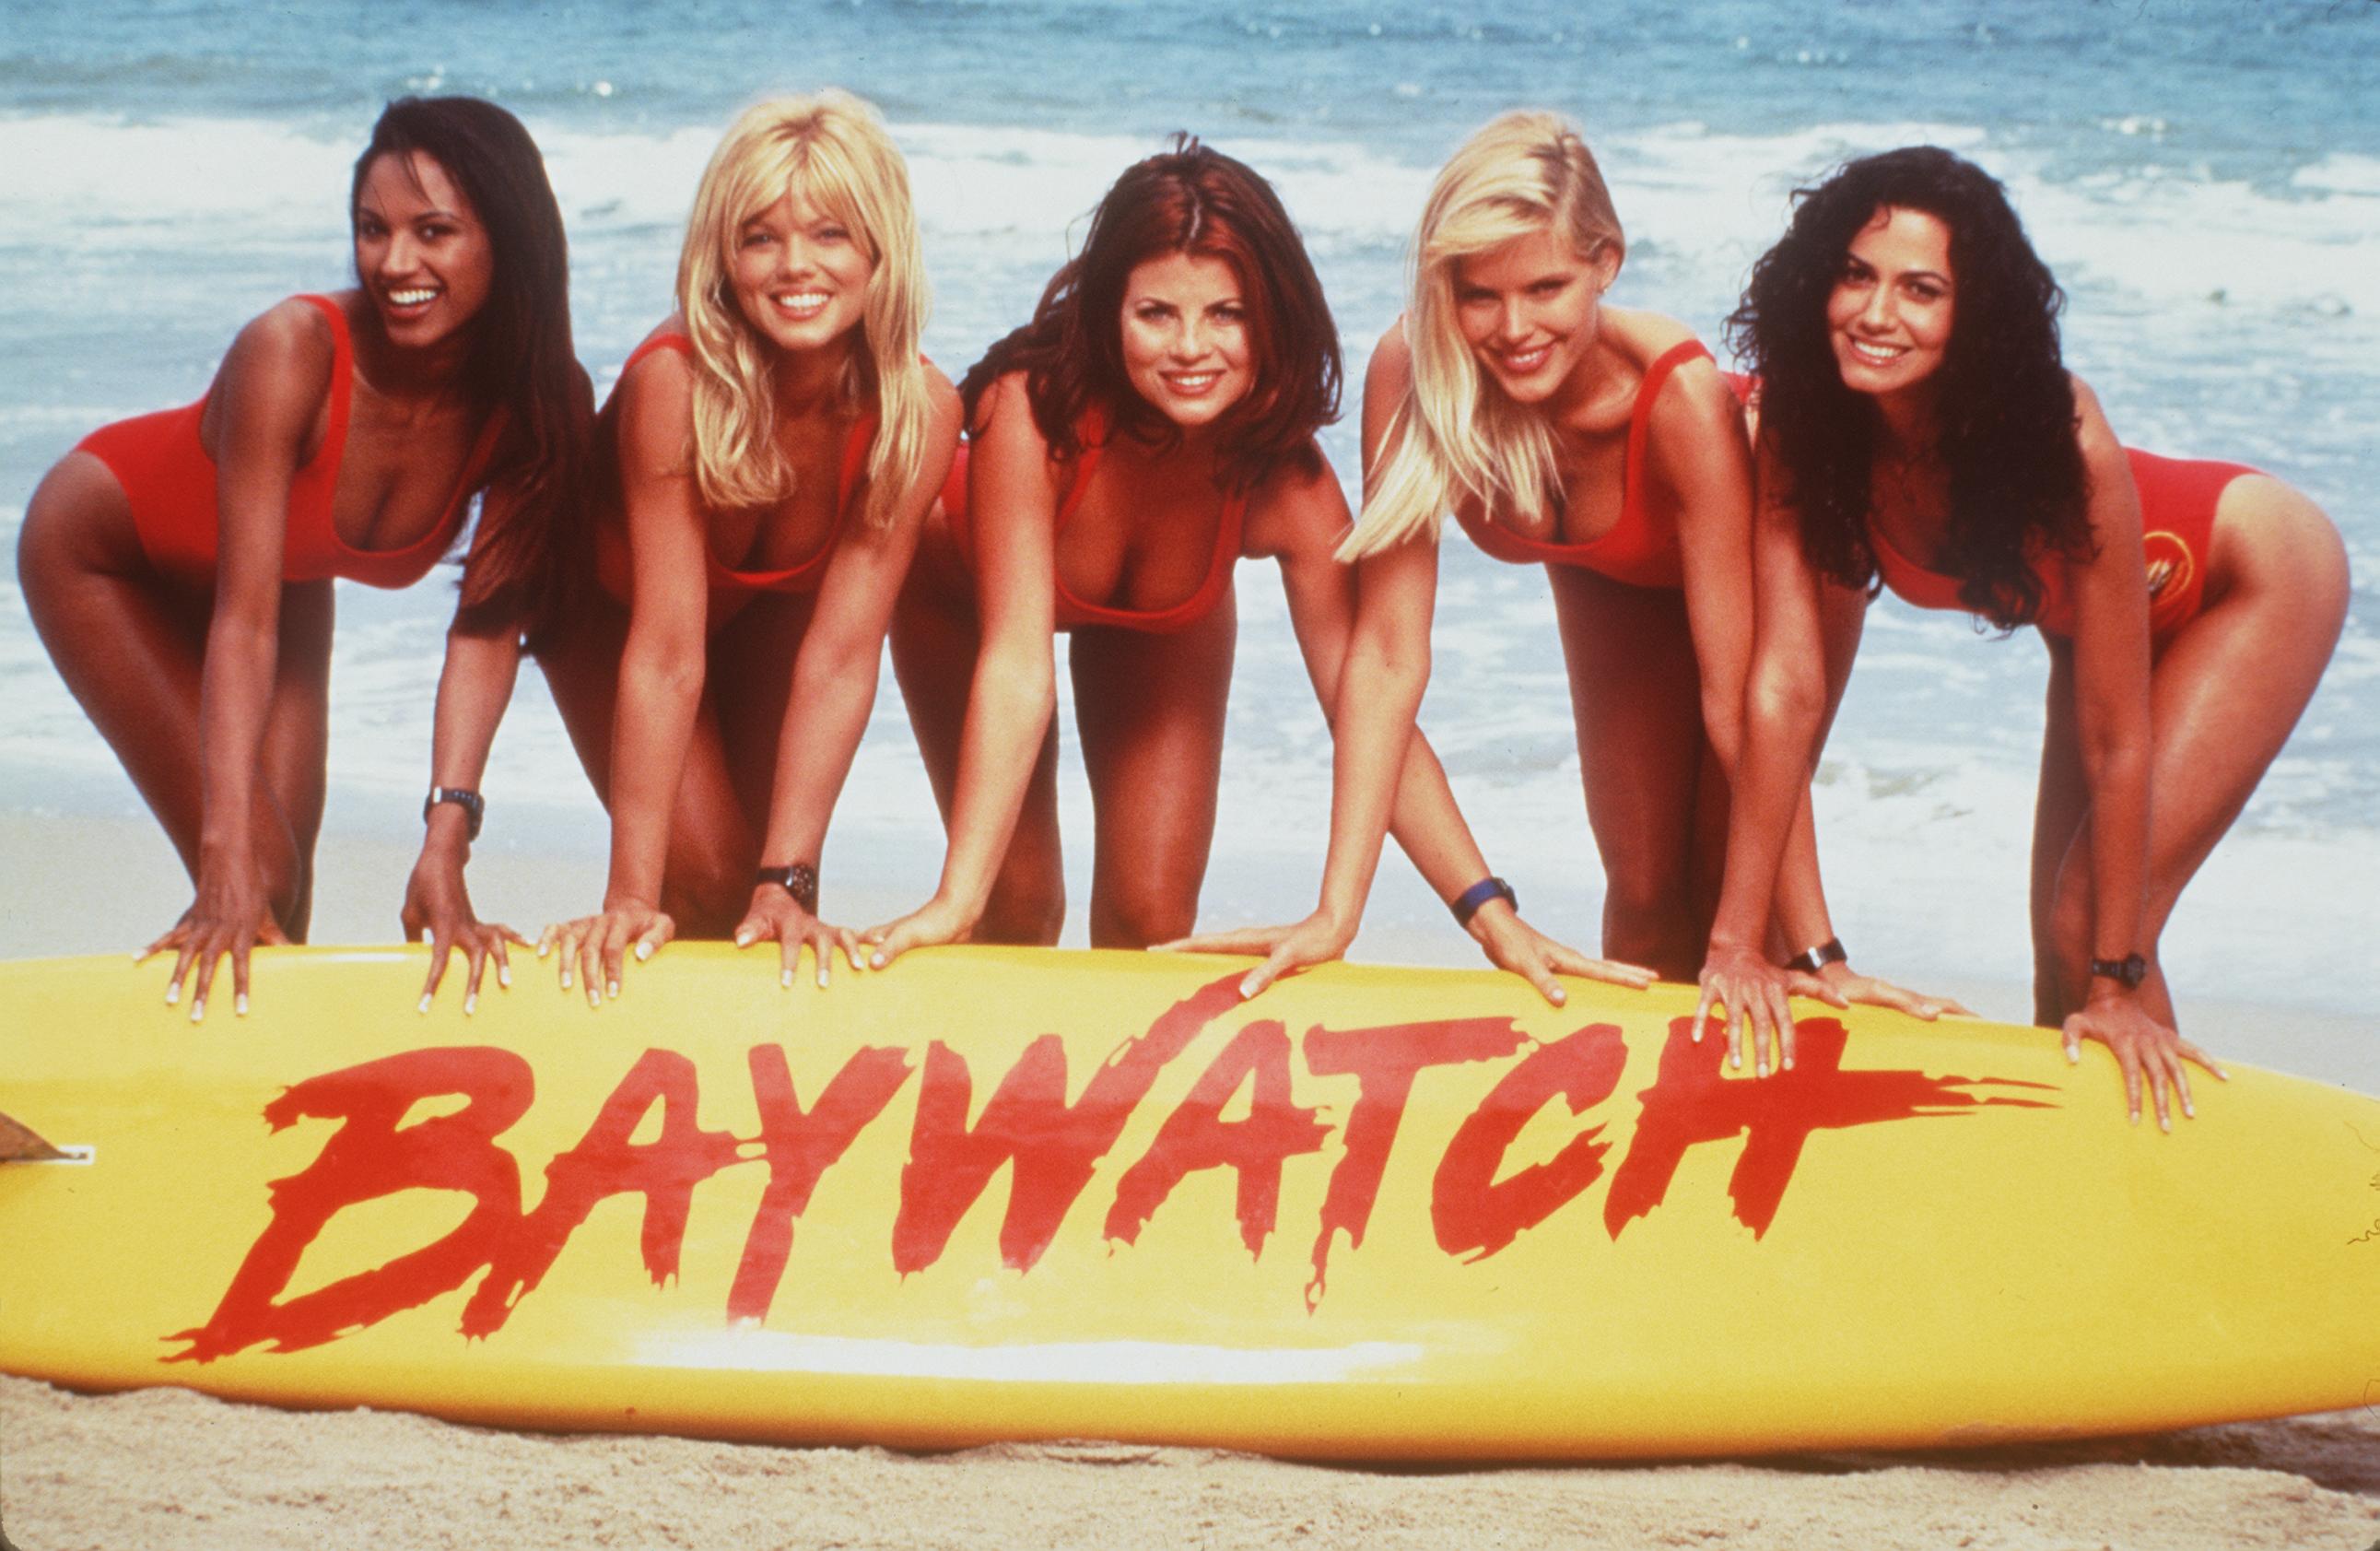 De izq. a dcha.: Traci Bingham, Donna D'Errico, Yasmine Bleeth, Gena Lee Nolin y Nancy Valen en el plató de "Baywatch", 1999 | Fuente: Getty Images